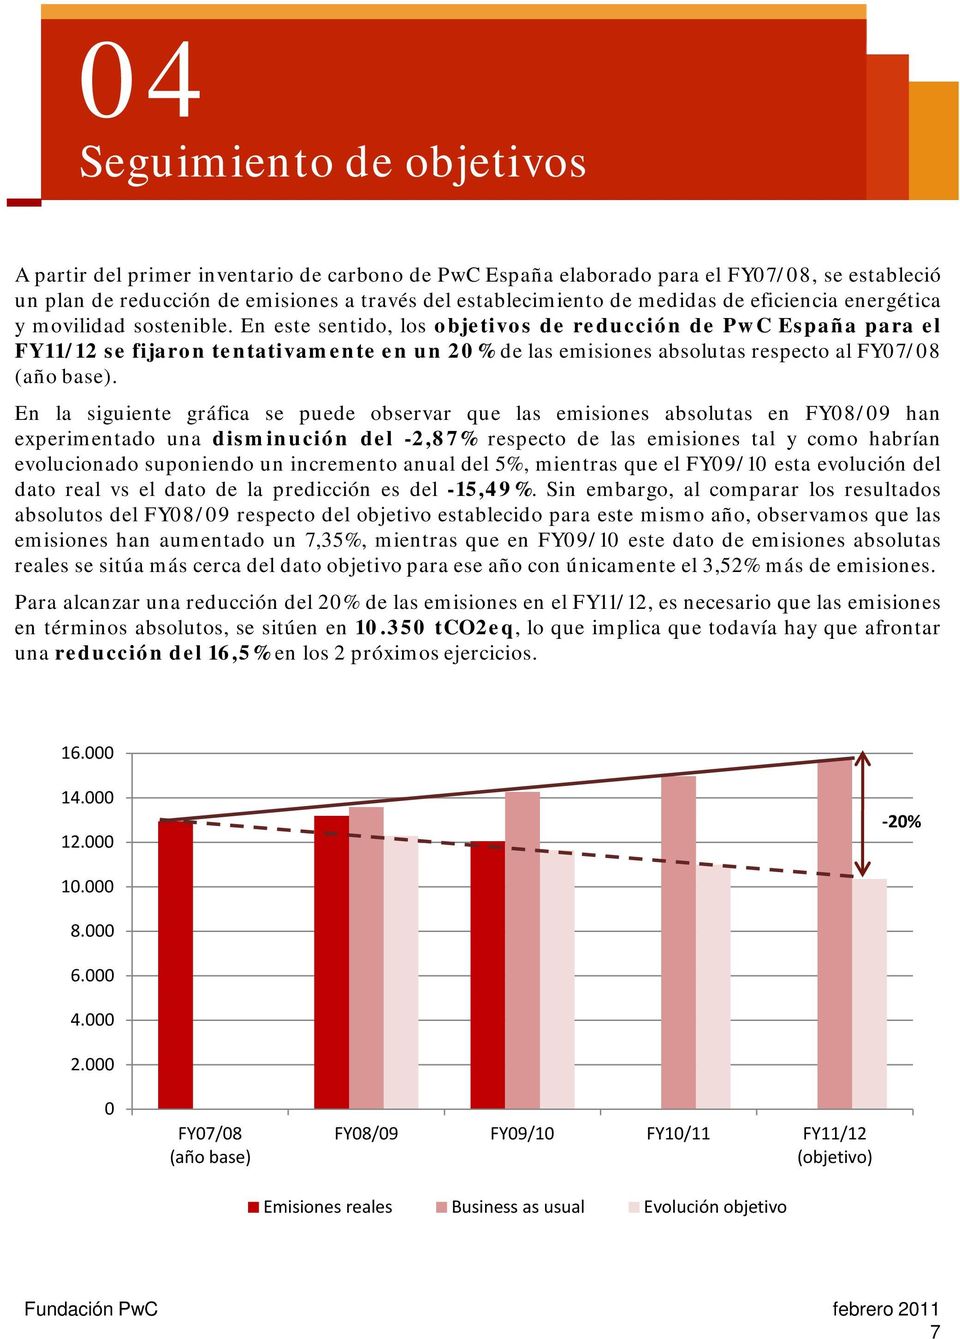 En este sentido, los objetivos de reducción de PwC España para el FY11/12 se fijaron tentativamente en un 20% de las emisiones absolutas respecto al FY07/08 (año base).